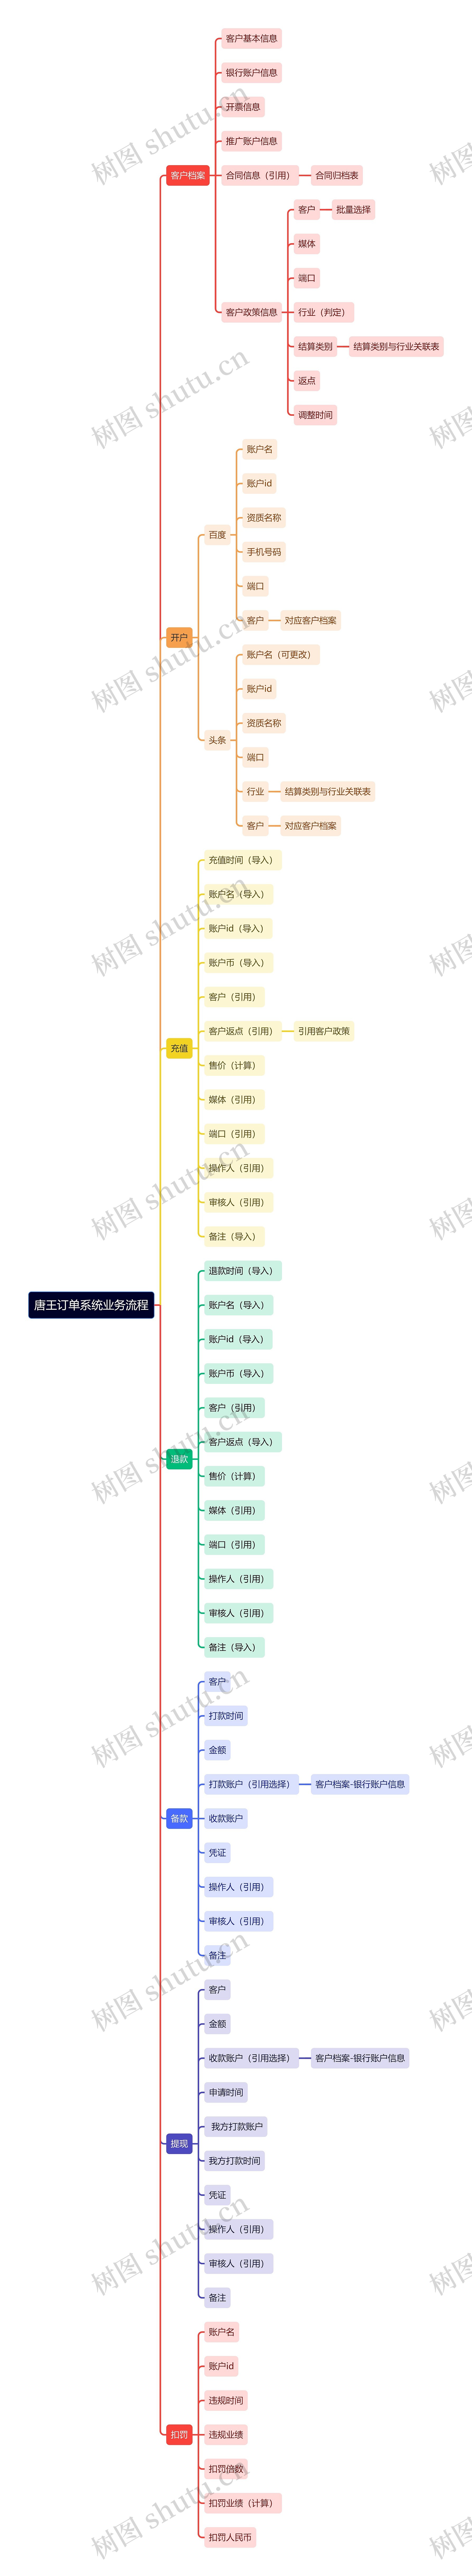 唐王订单系统业务流程